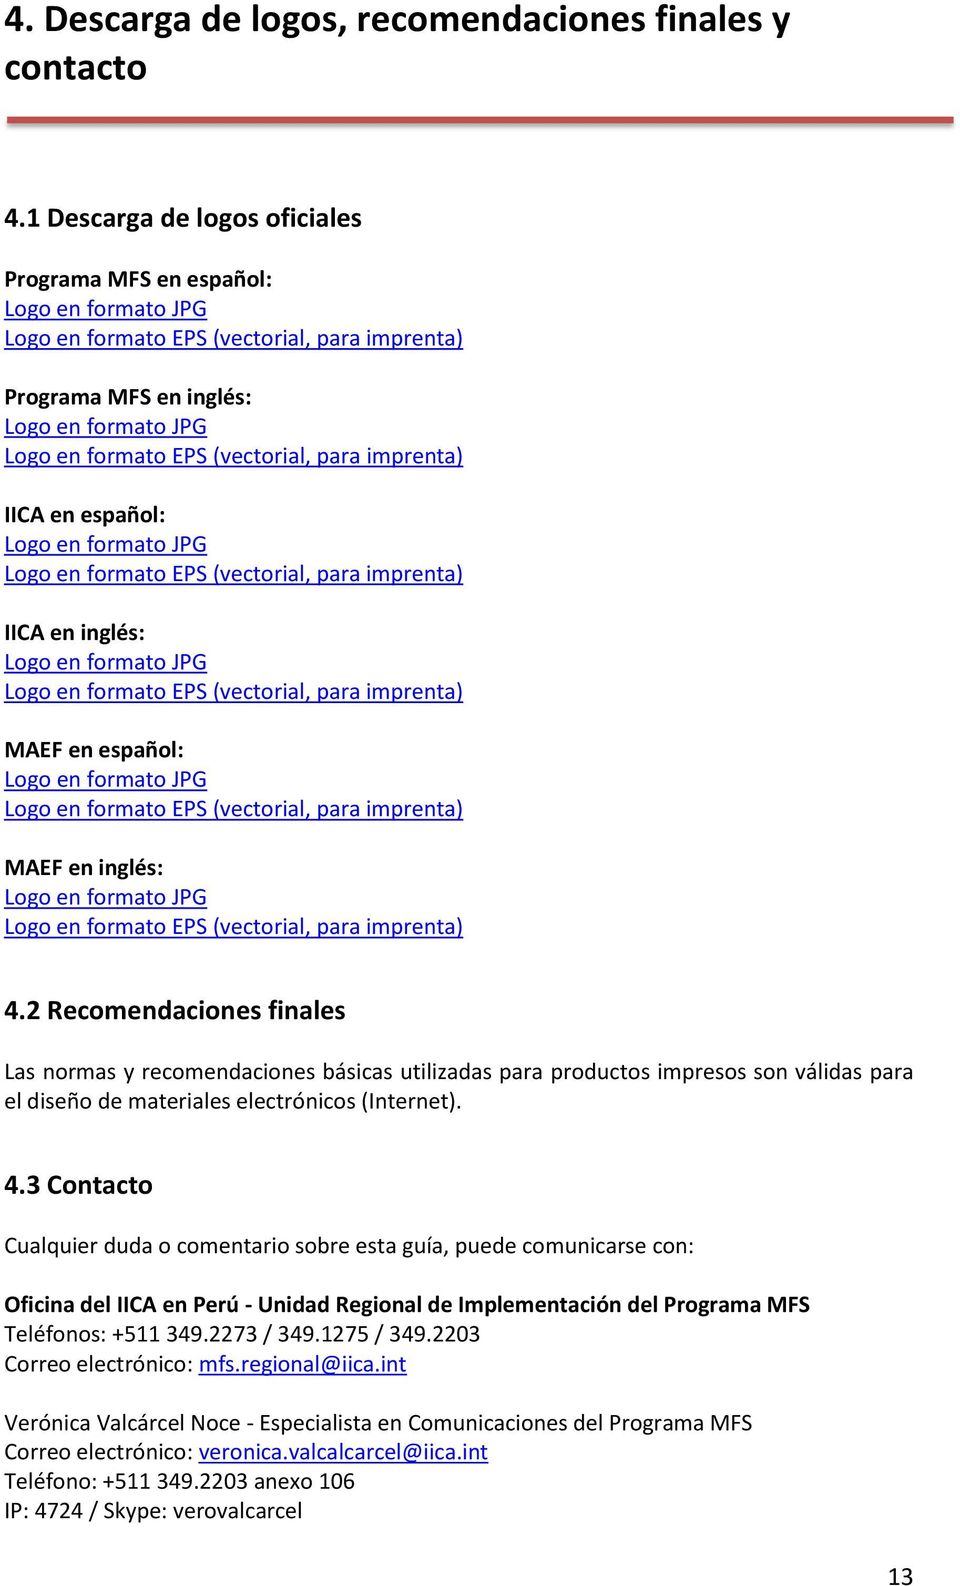 para imprenta) IICA en español: Logo en formato JPG Logo en formato EPS (vectorial, para imprenta) IICA en inglés: Logo en formato JPG Logo en formato EPS (vectorial, para imprenta) MAEF en español: